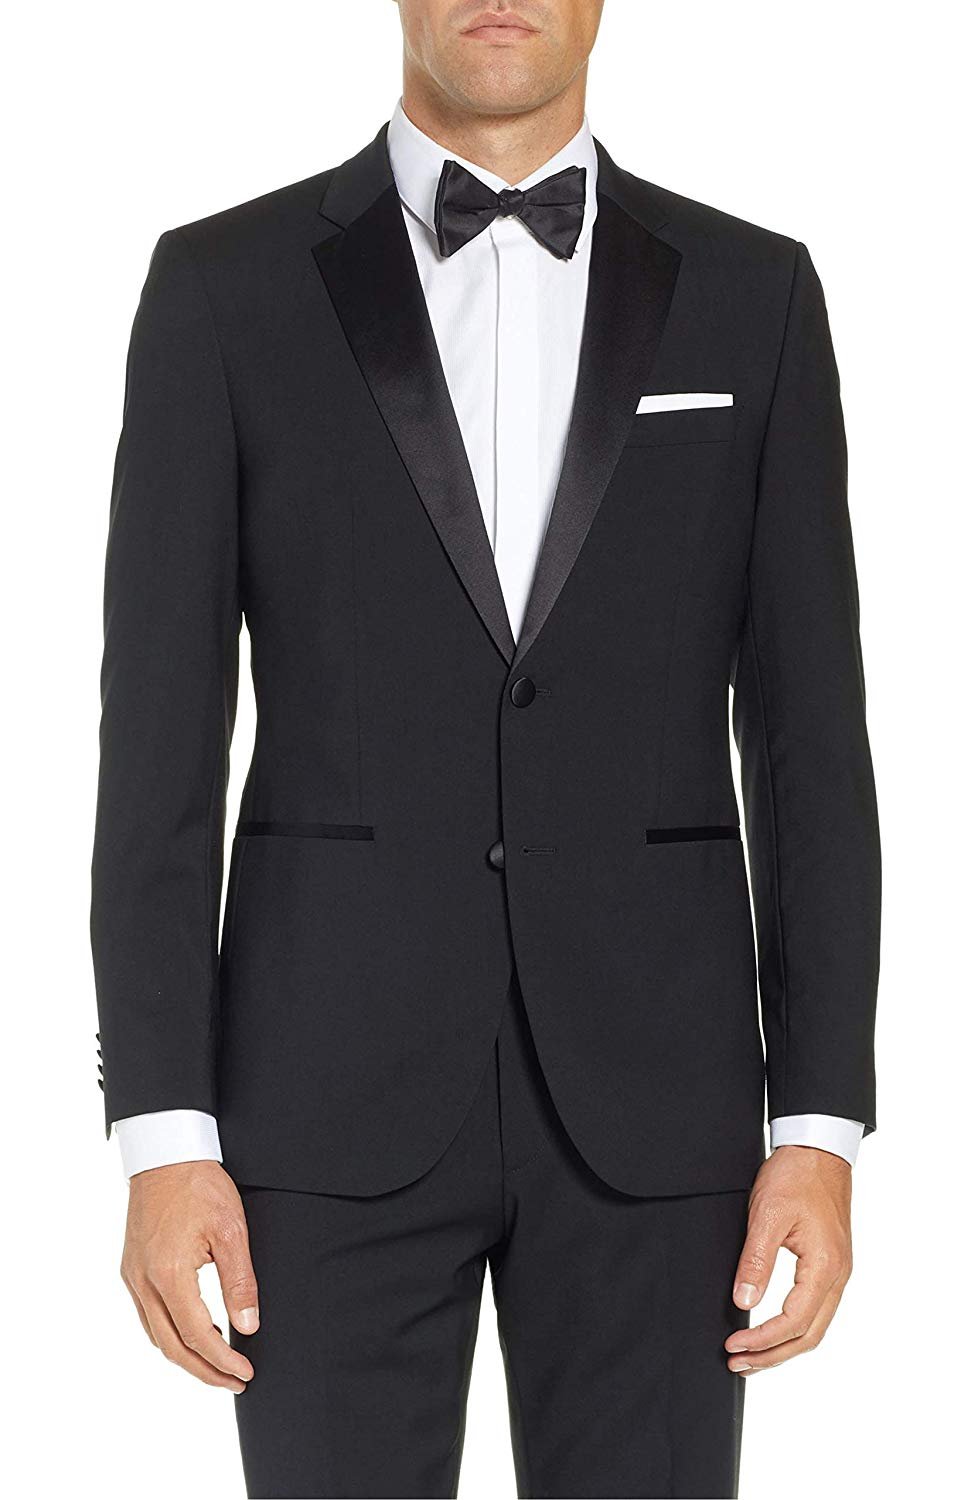 NEW MEN TUXEDO 2 Button Tuxedo Suit Modern Fit - Colors | eBay